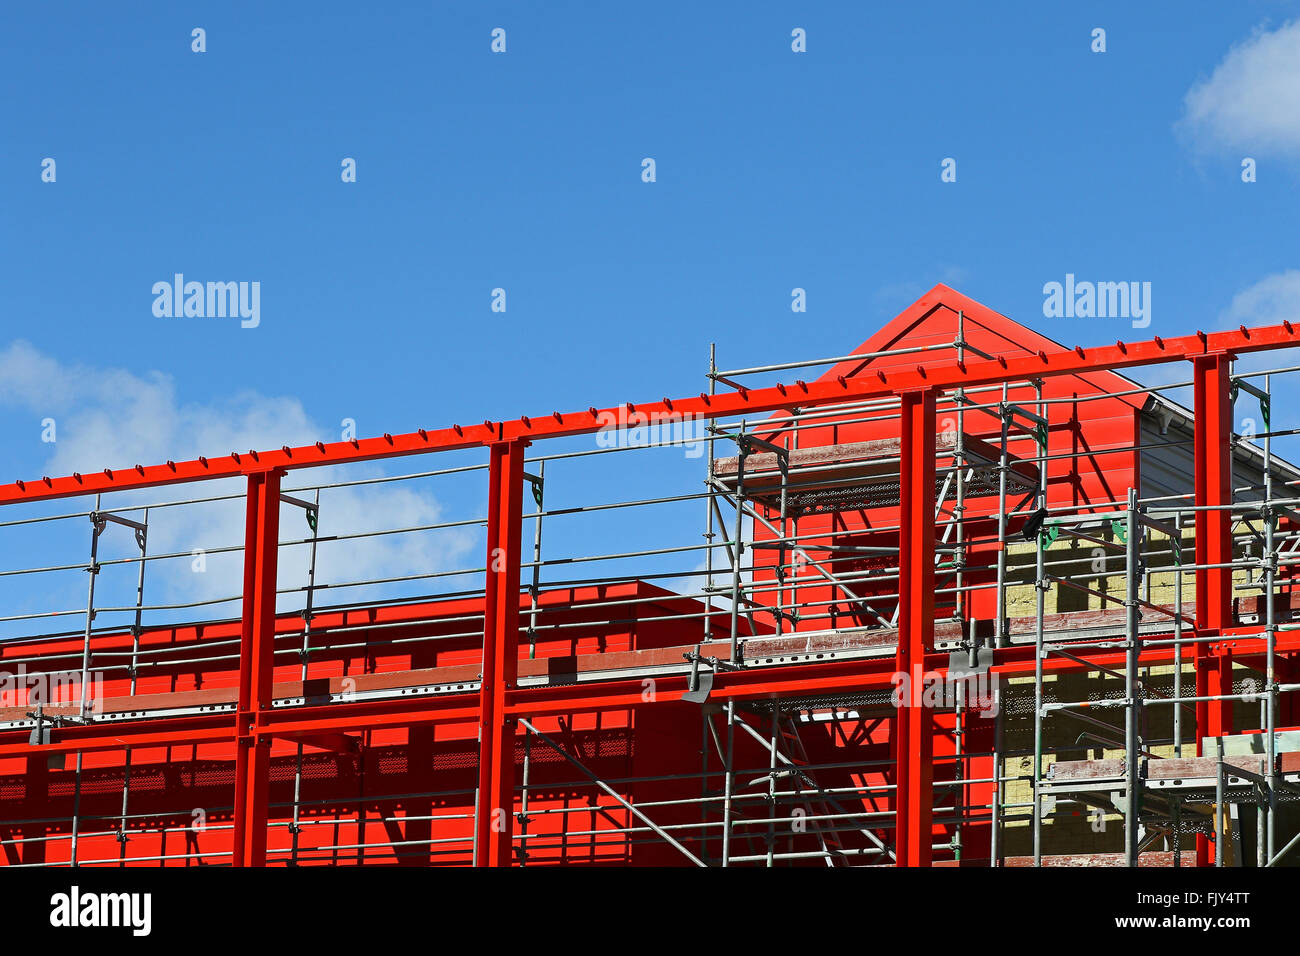 Stahlträger-Neubau gebaut gegen blauen Himmel und weiße Wolken Stockfoto